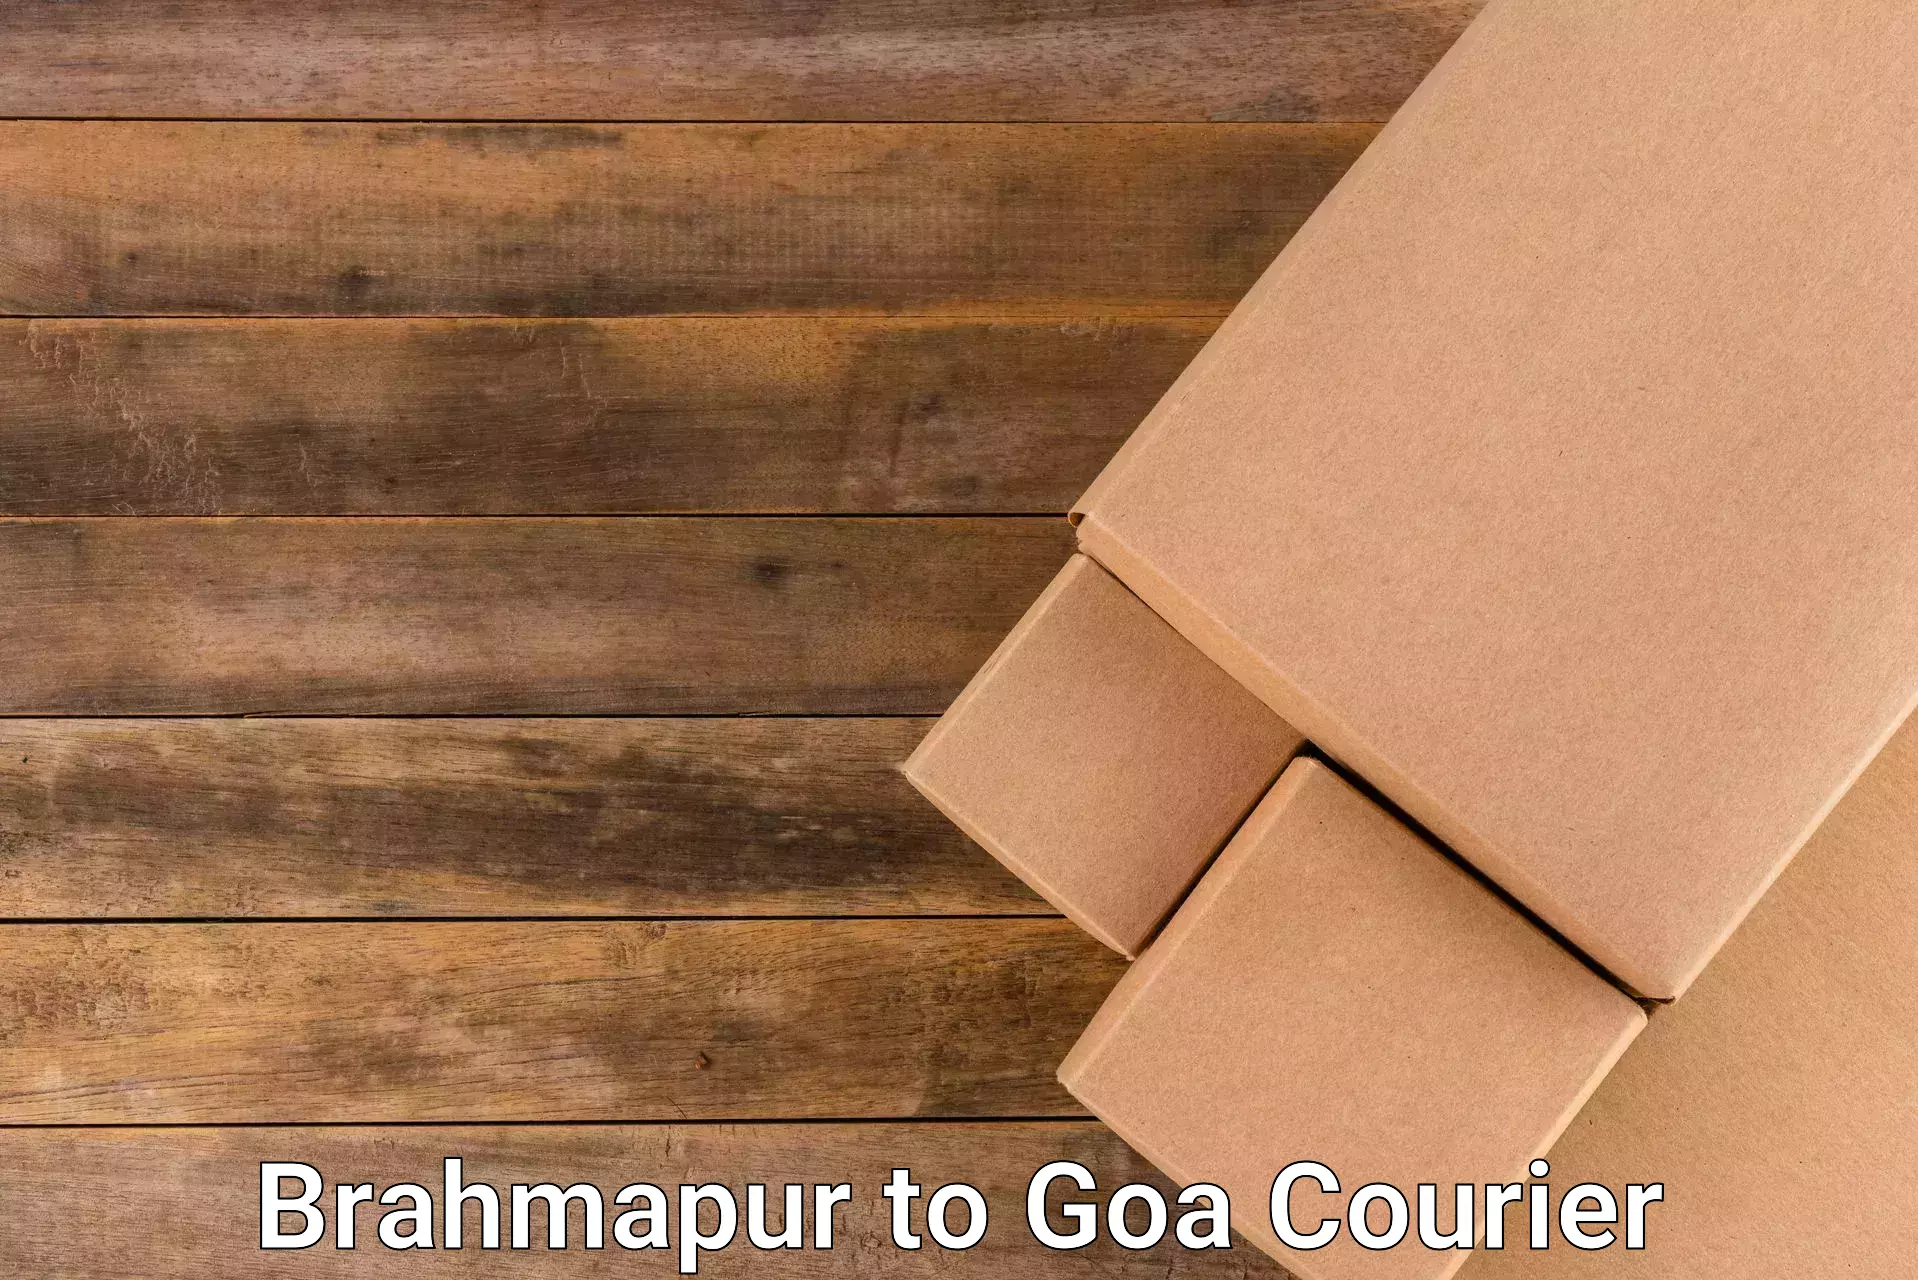 Reliable courier service Brahmapur to Panjim